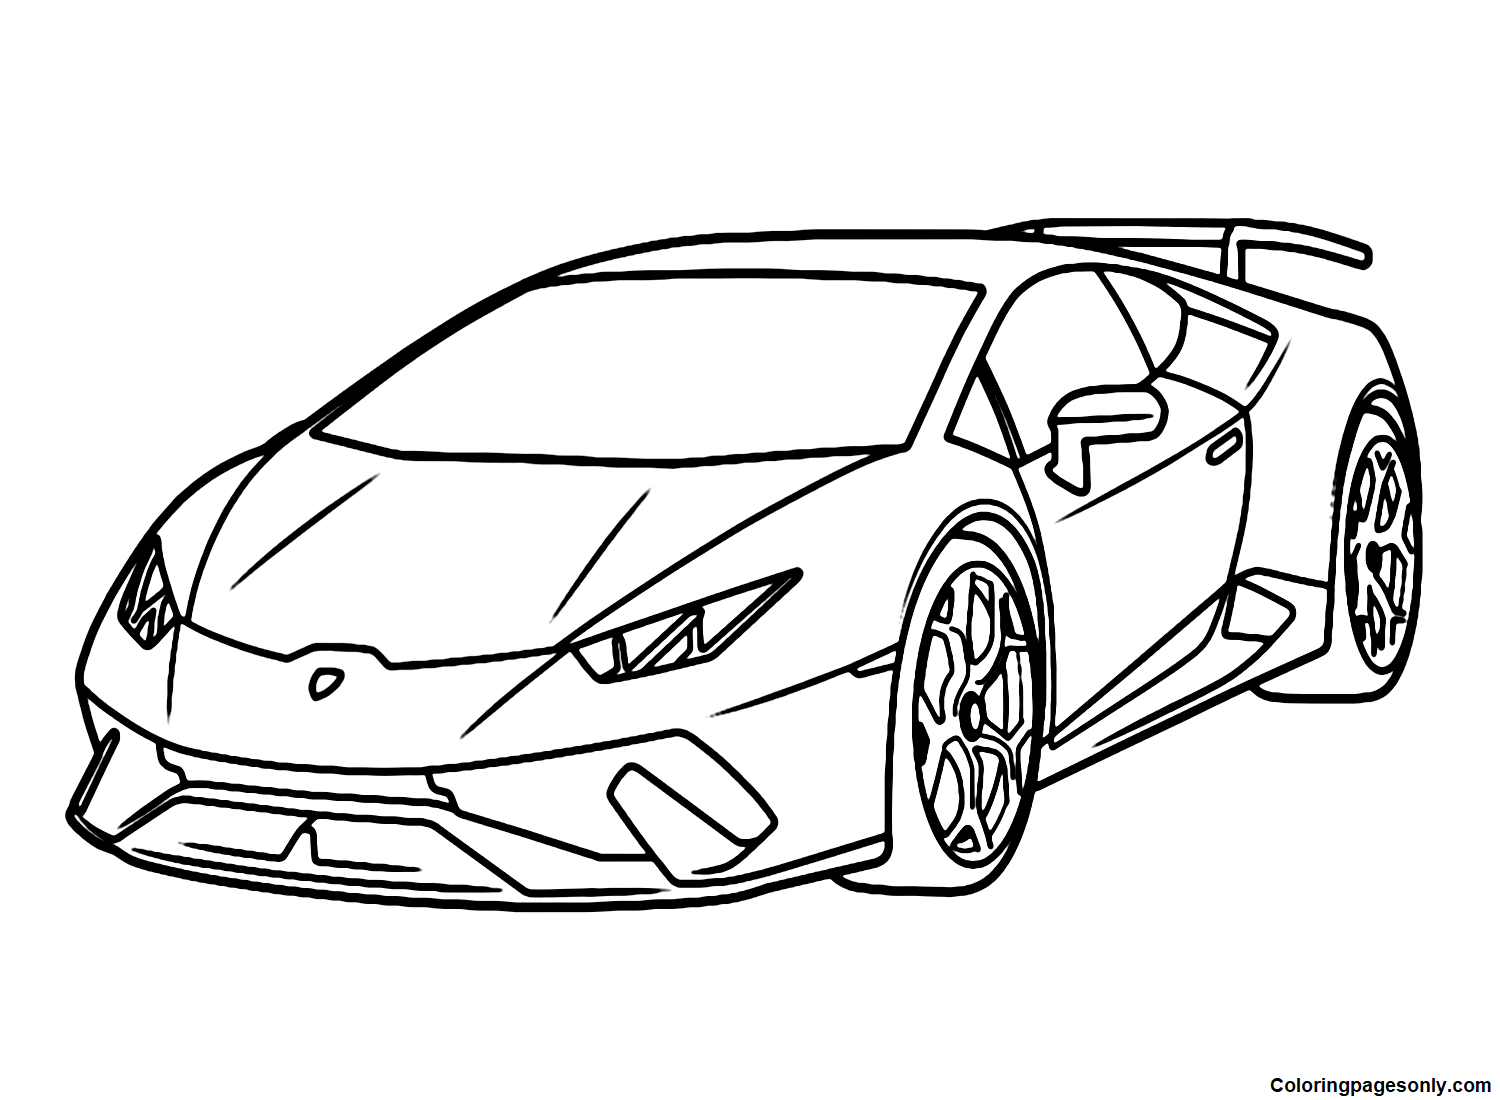 Lamborghini Huracan Car Coloring Pages - Lamborghini Coloring Pages - Coloring  Pages For Kids And Adults